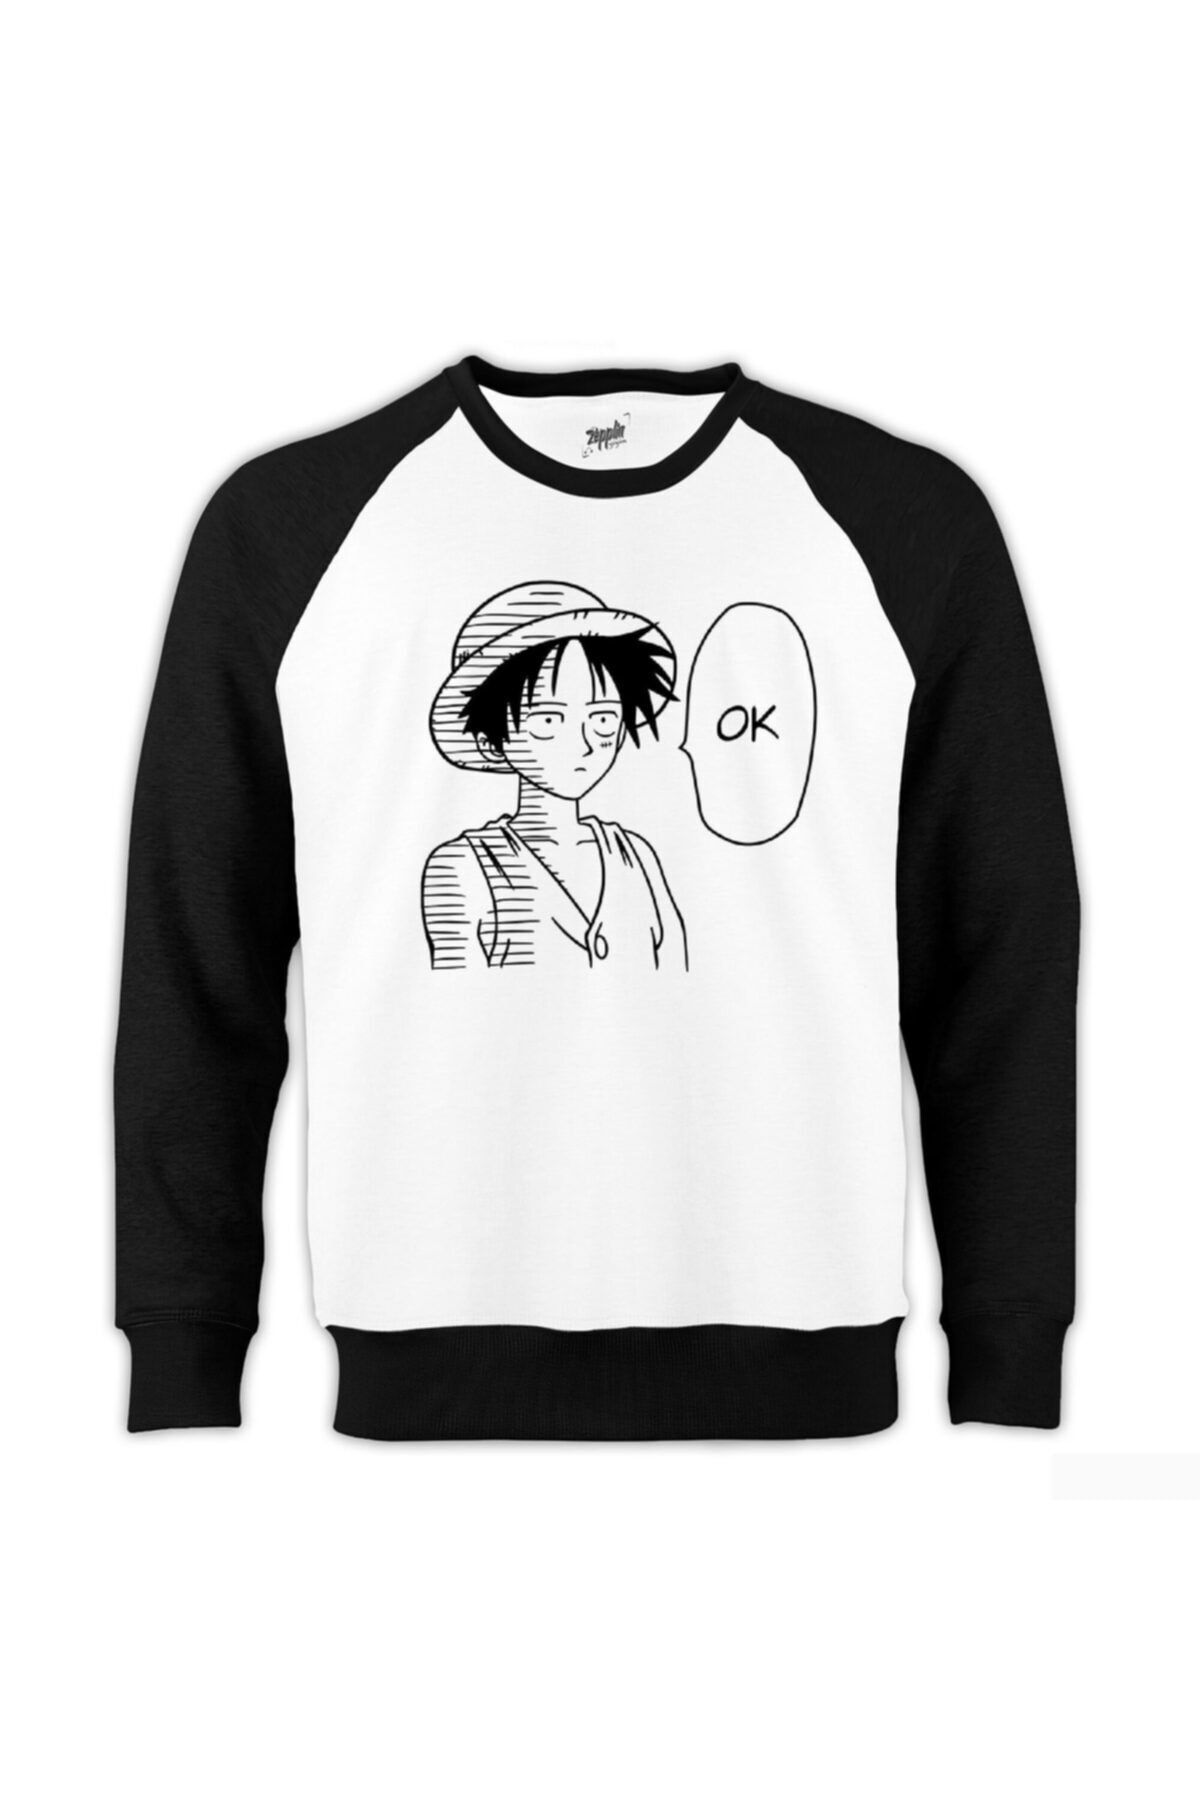 Z zepplin One Piece Luffy Ok Reglan Kol Beyaz Sweatshirt